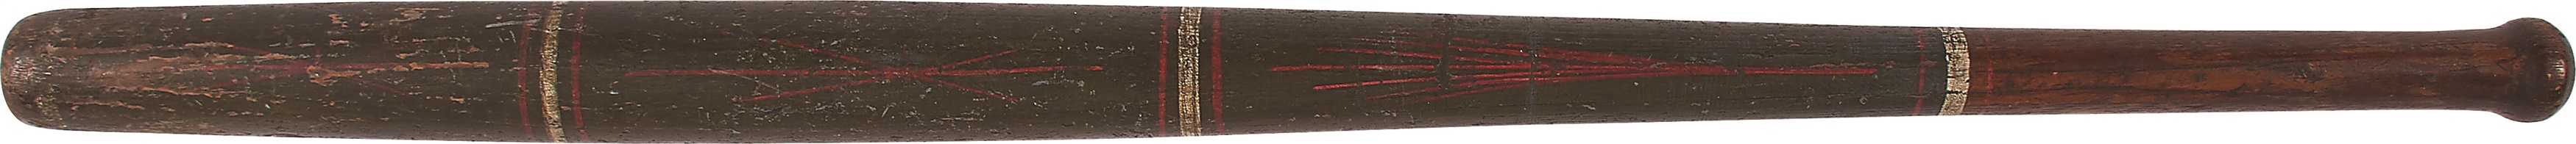 Antique Sporting Goods - 1860s Folk Art Handpainted Ringed Baseball Bat